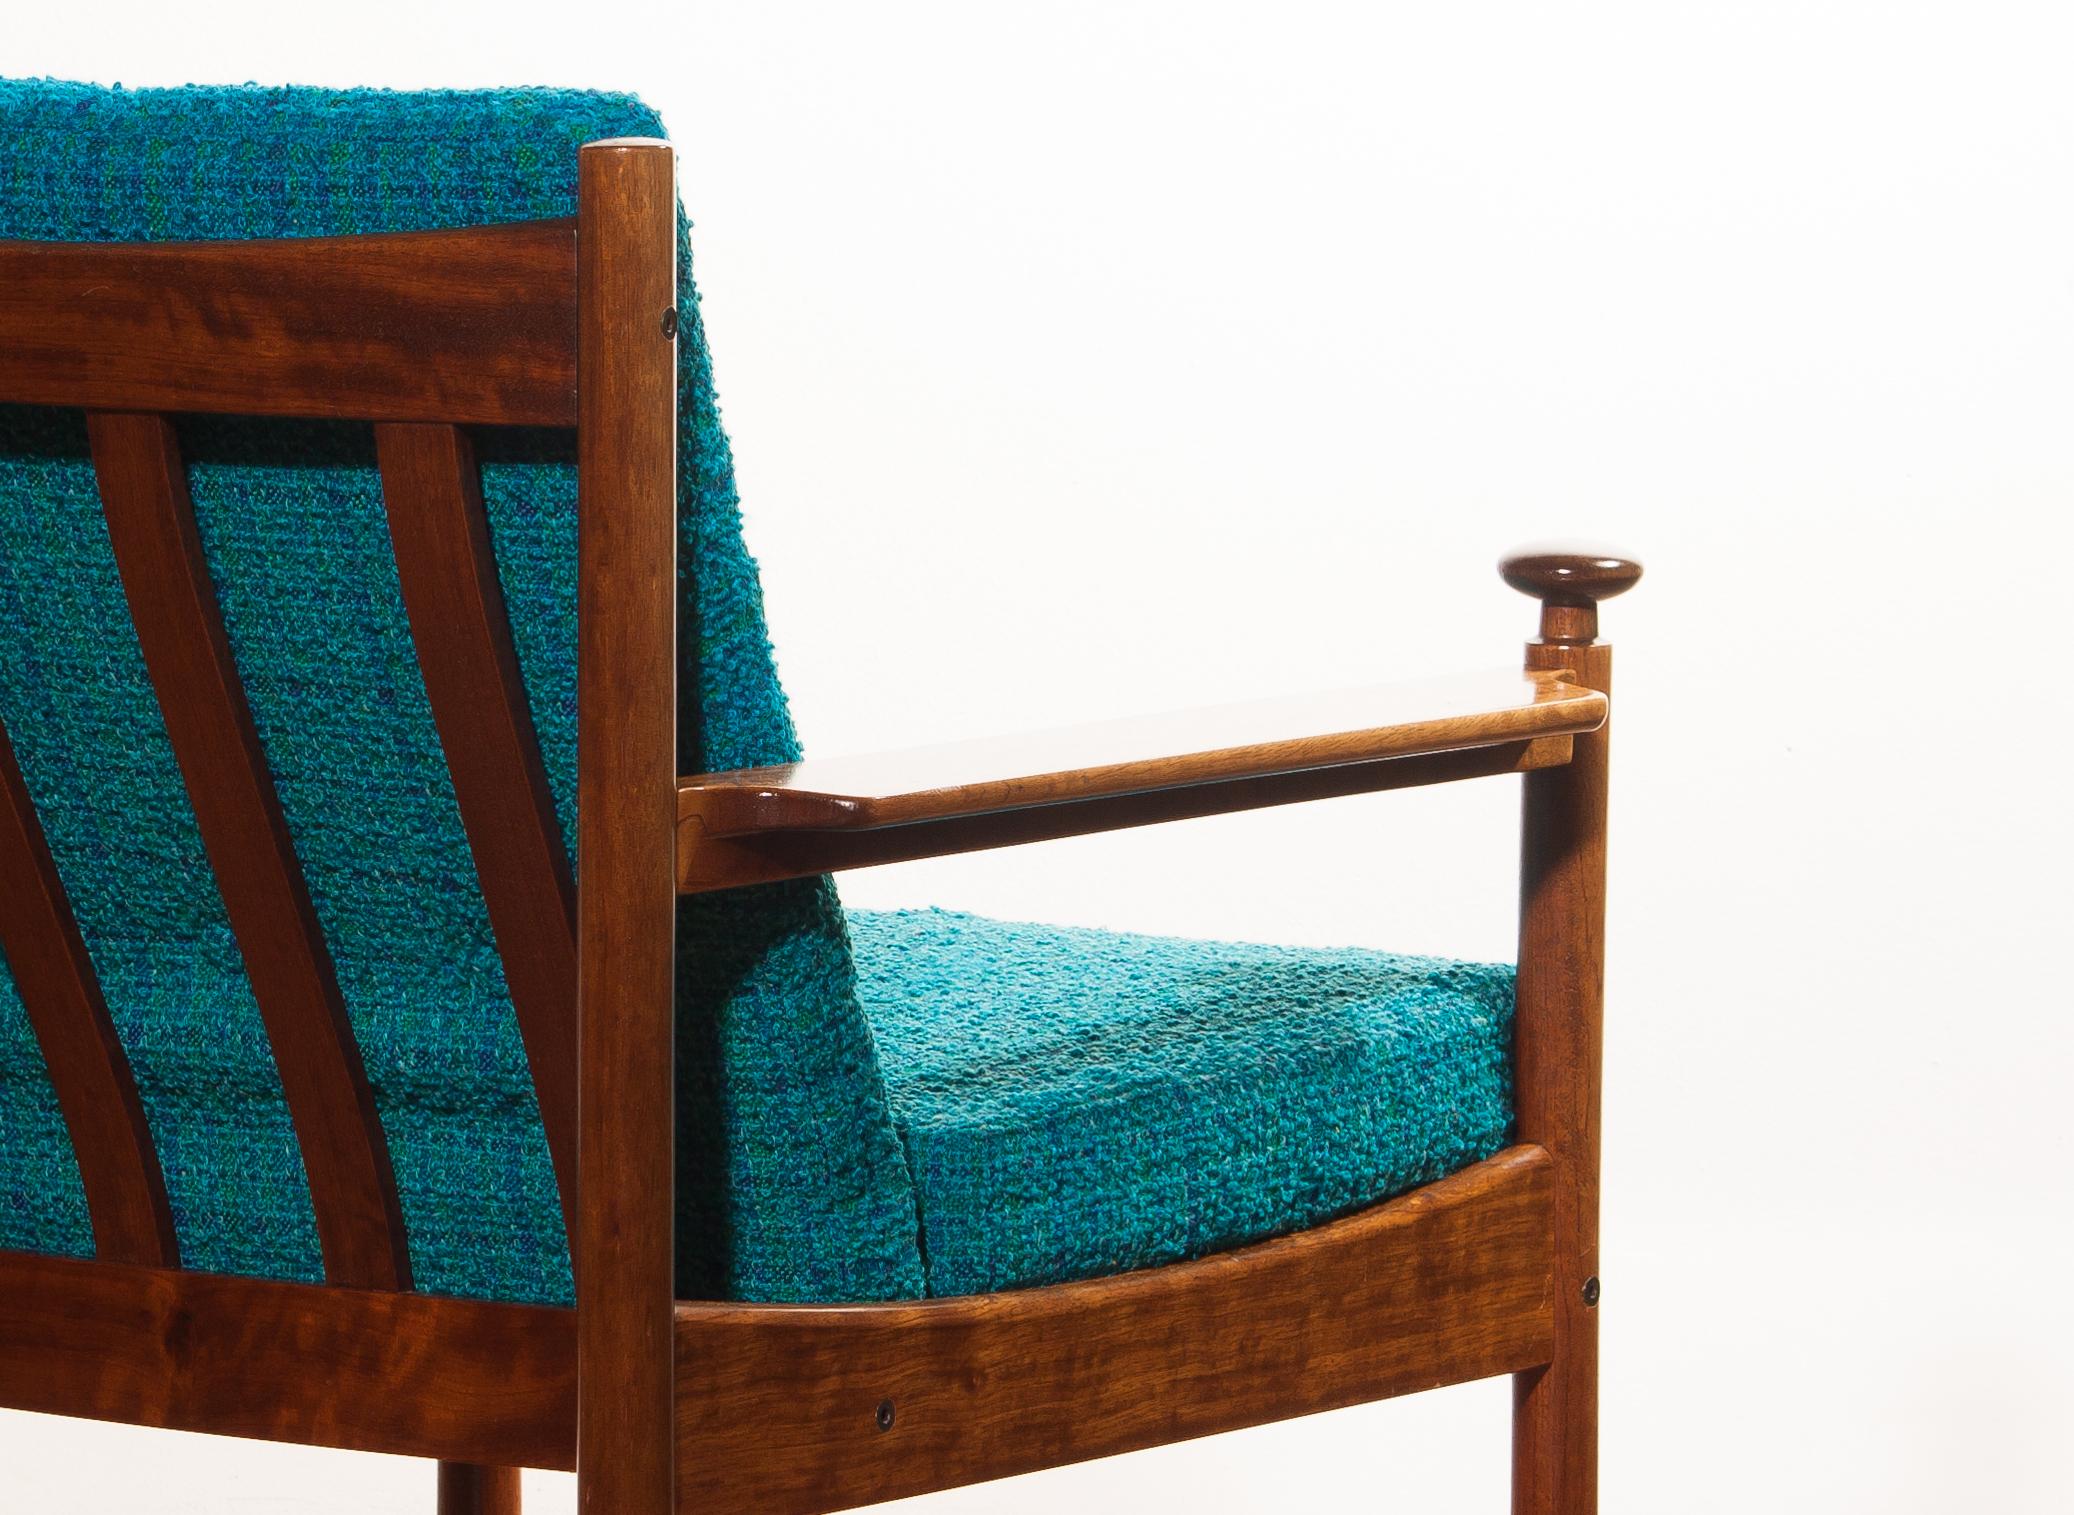 1950s Chair by Torbjørn Afdal for Sandvik & Co. Mobler 2